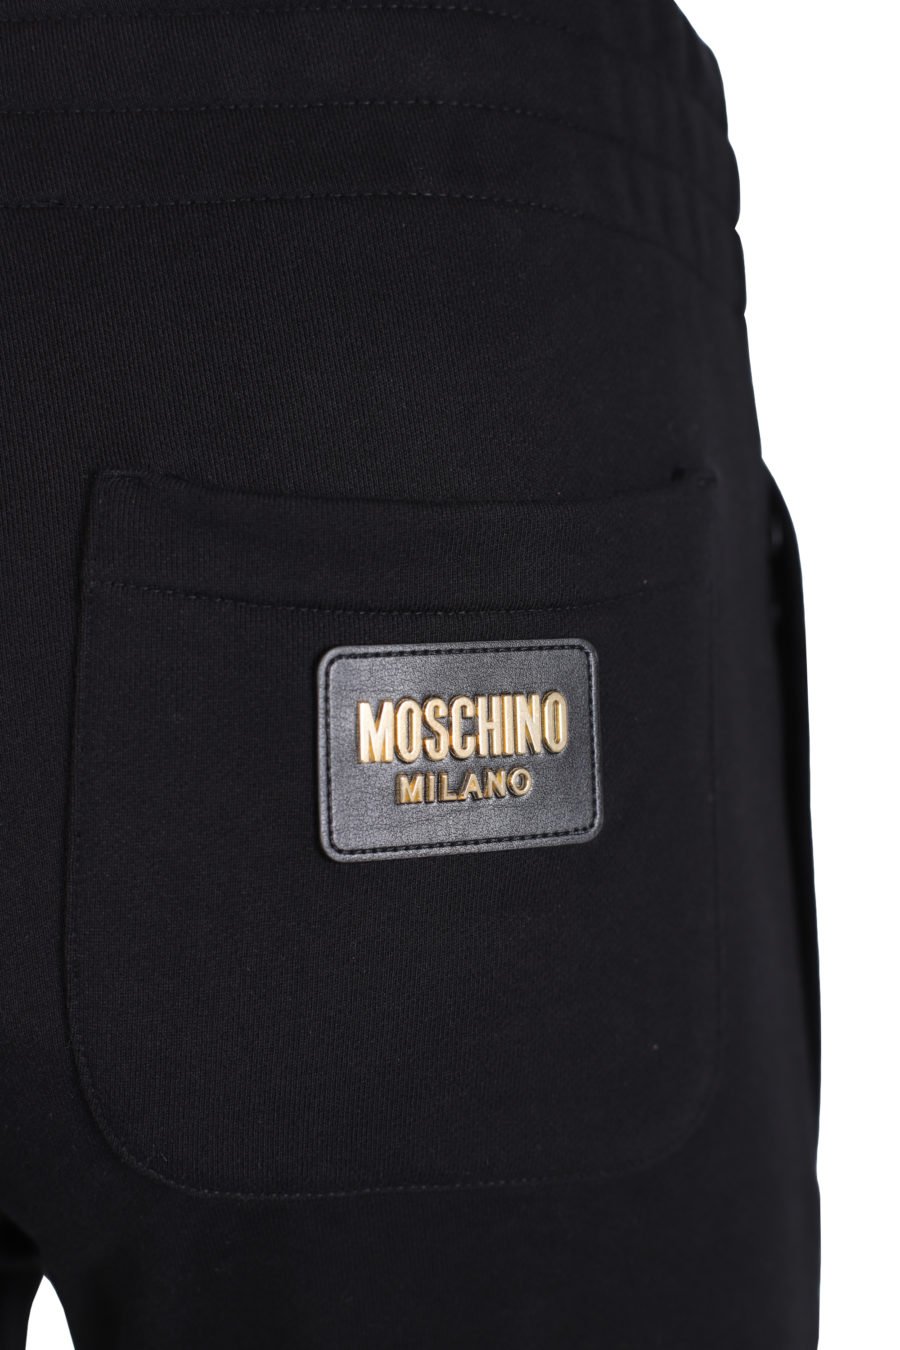 Lange schwarze Hose mit goldenem Logo auf dem Rücken - IMG 1438